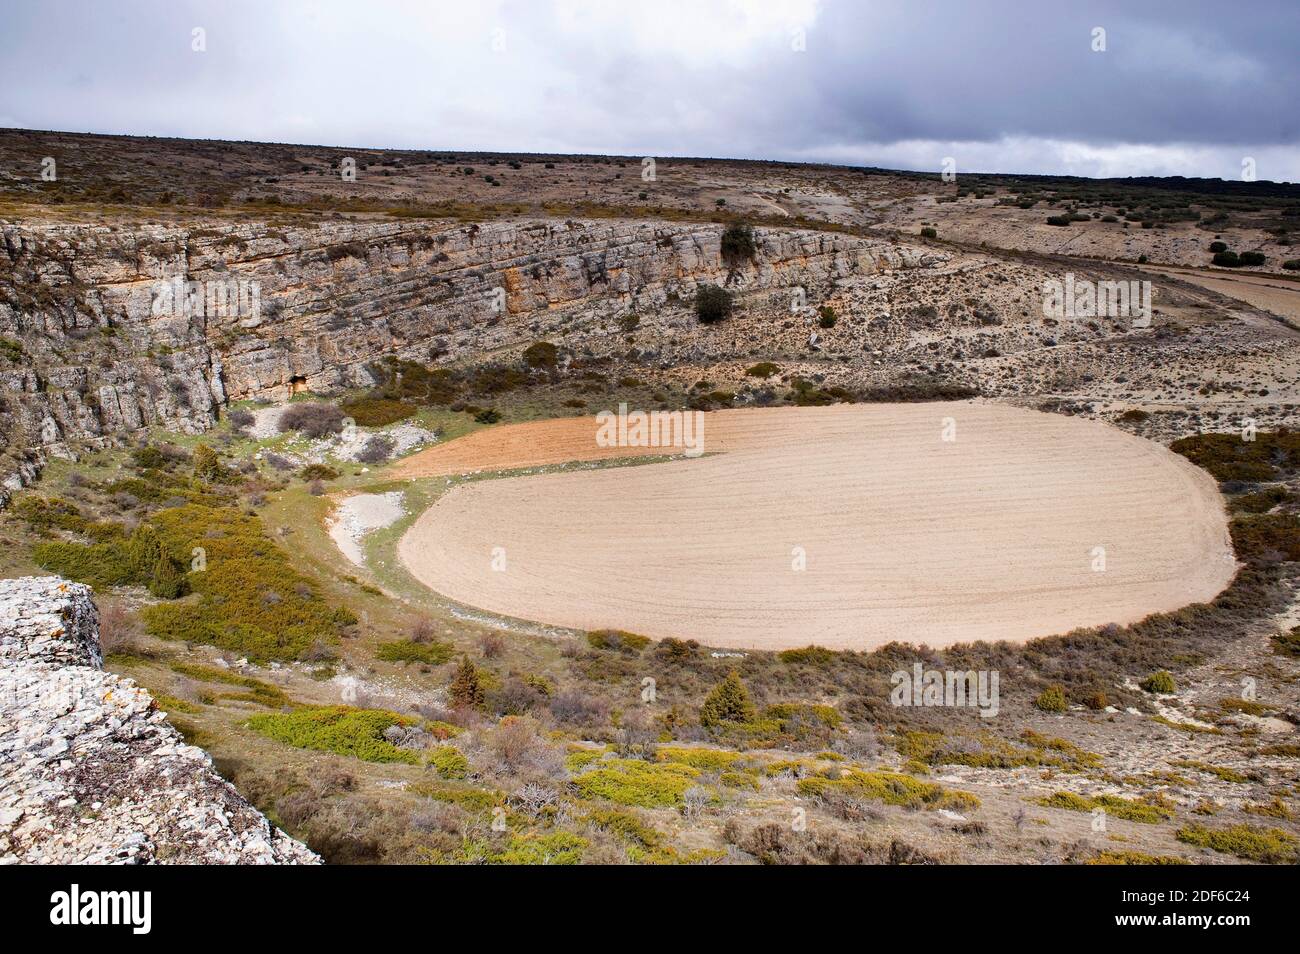 La doline ou le gouffre est un trou dans le sol causé par un cortète karstique. Cette photo a été prise à Pozondon, Teruel, Aragon, Espagne. Banque D'Images